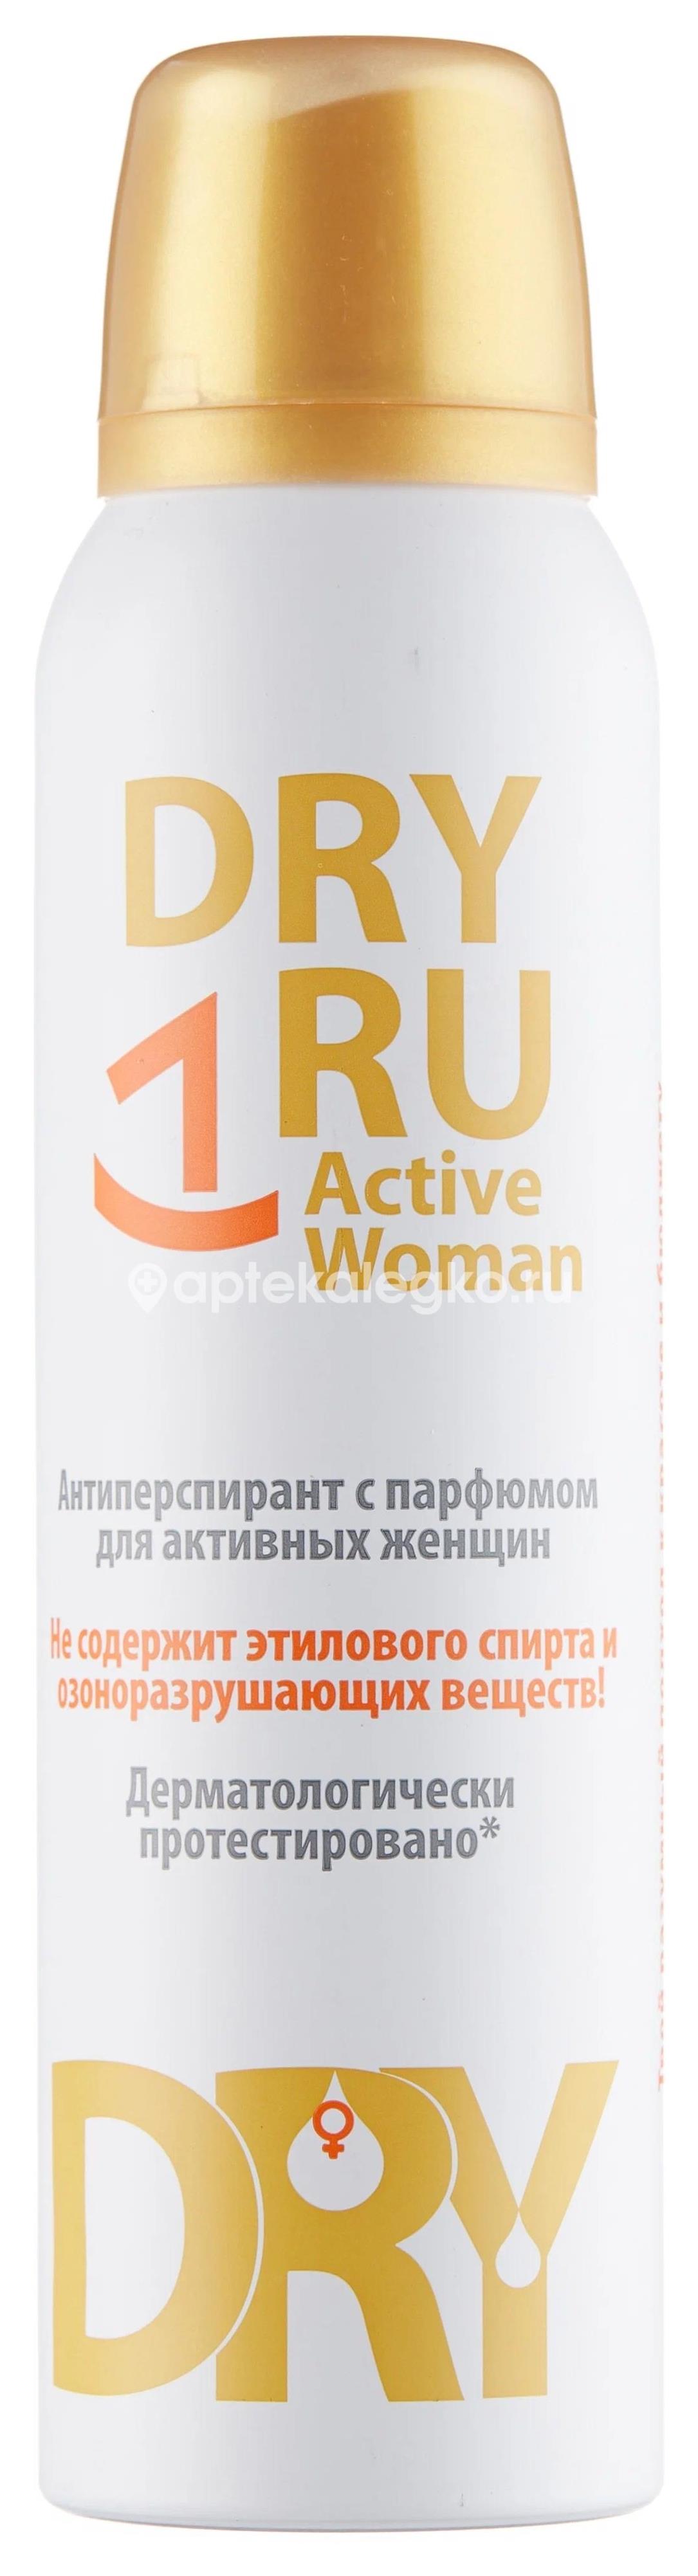 Драй ру актив вуман с парфюмом для активных женщин 150мл. спр. [dryru] - 1